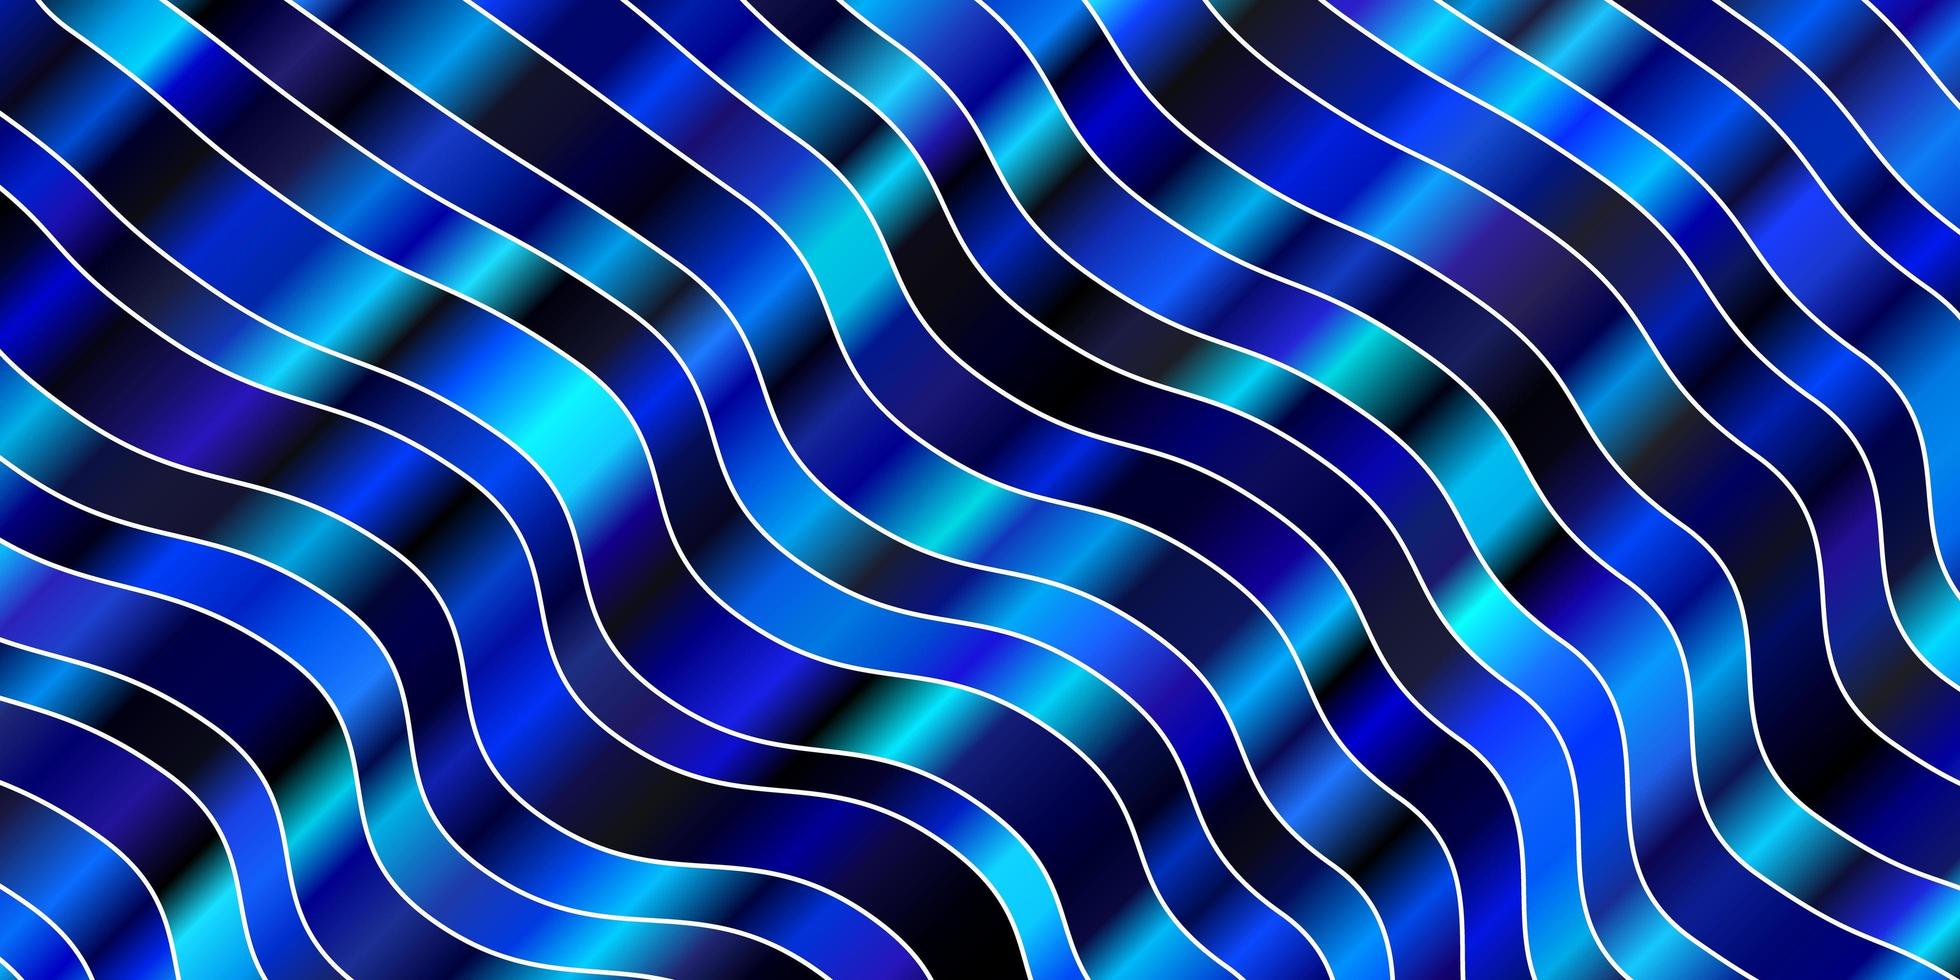 fundo azul escuro com linhas curvas. vetor